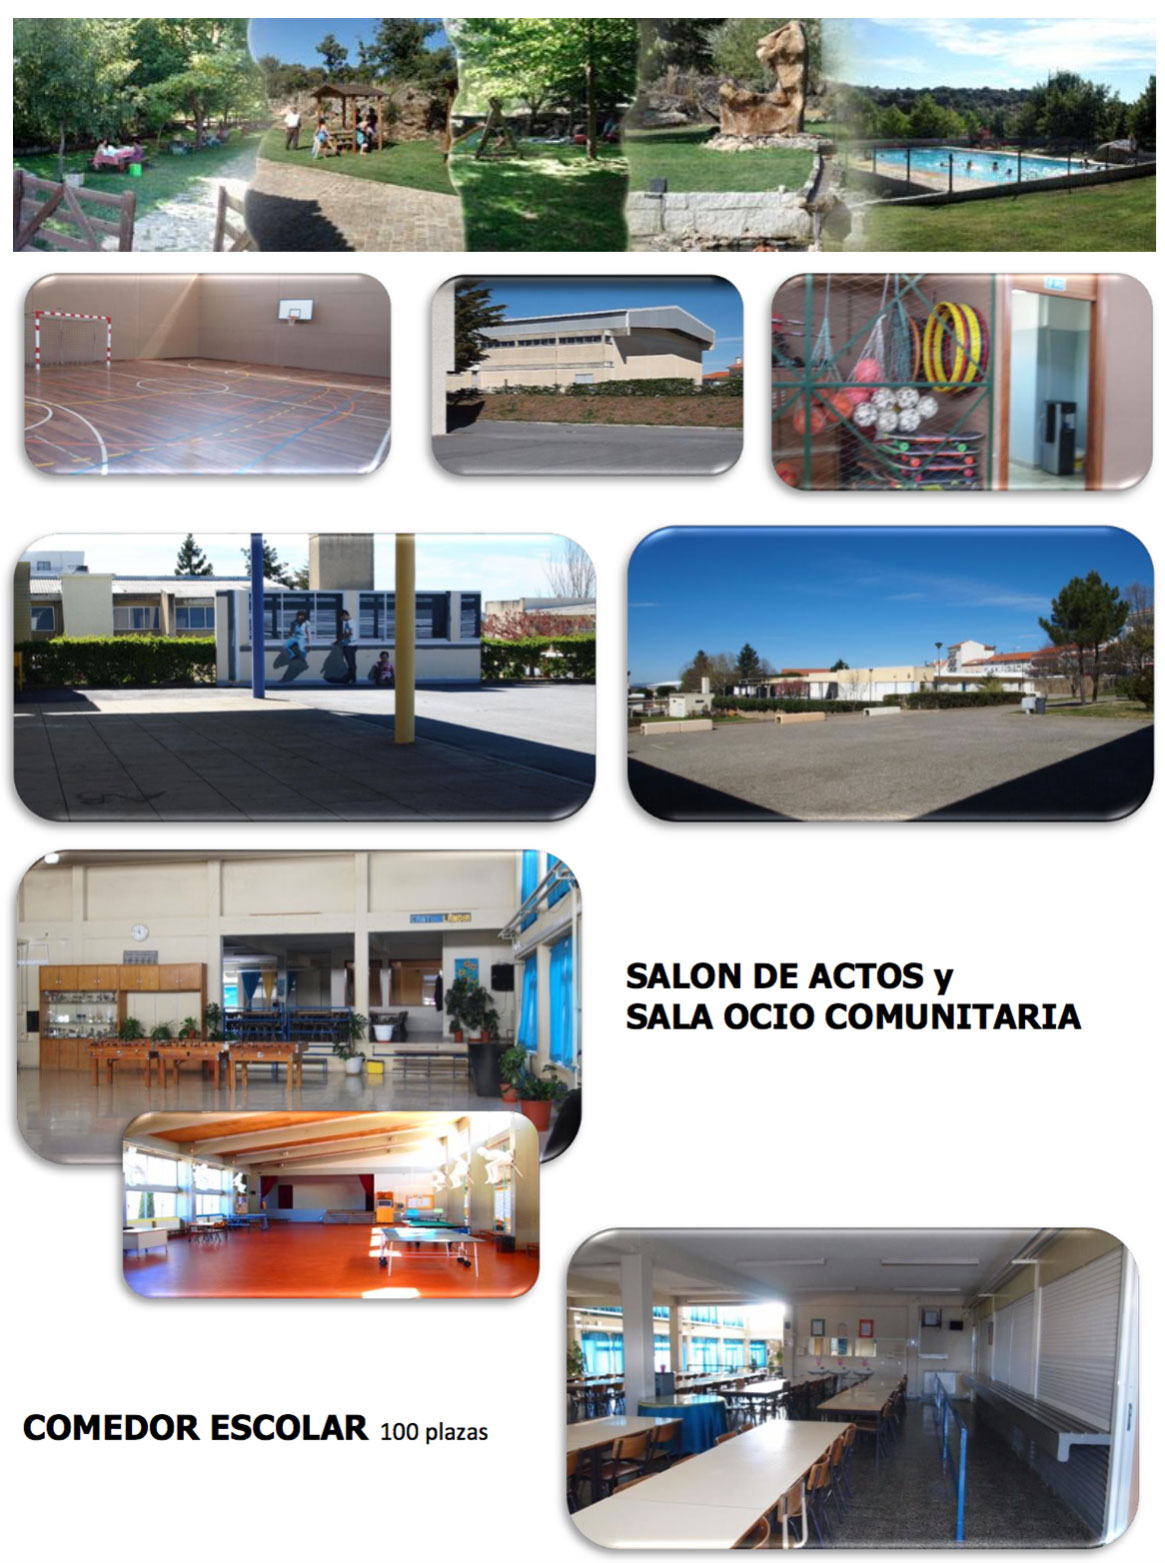 II Campus Internacional de Balonmano Toño Garnacho | Galería 3 / 6